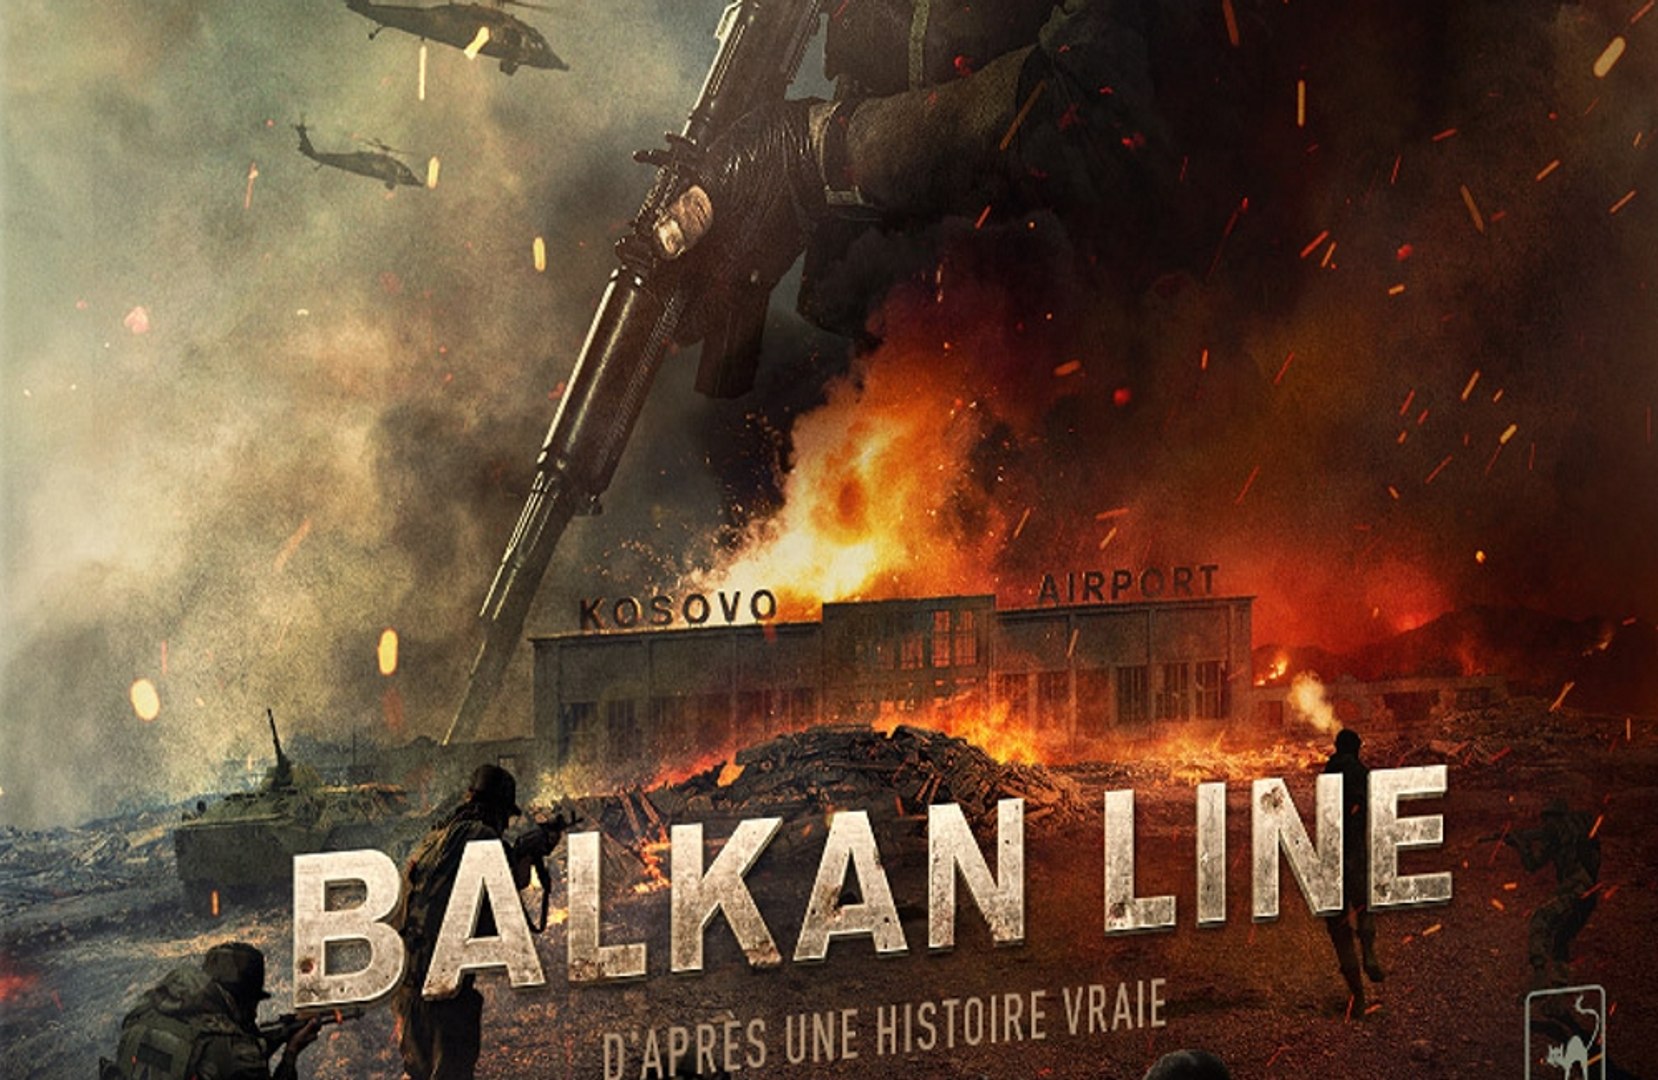 Balkan line